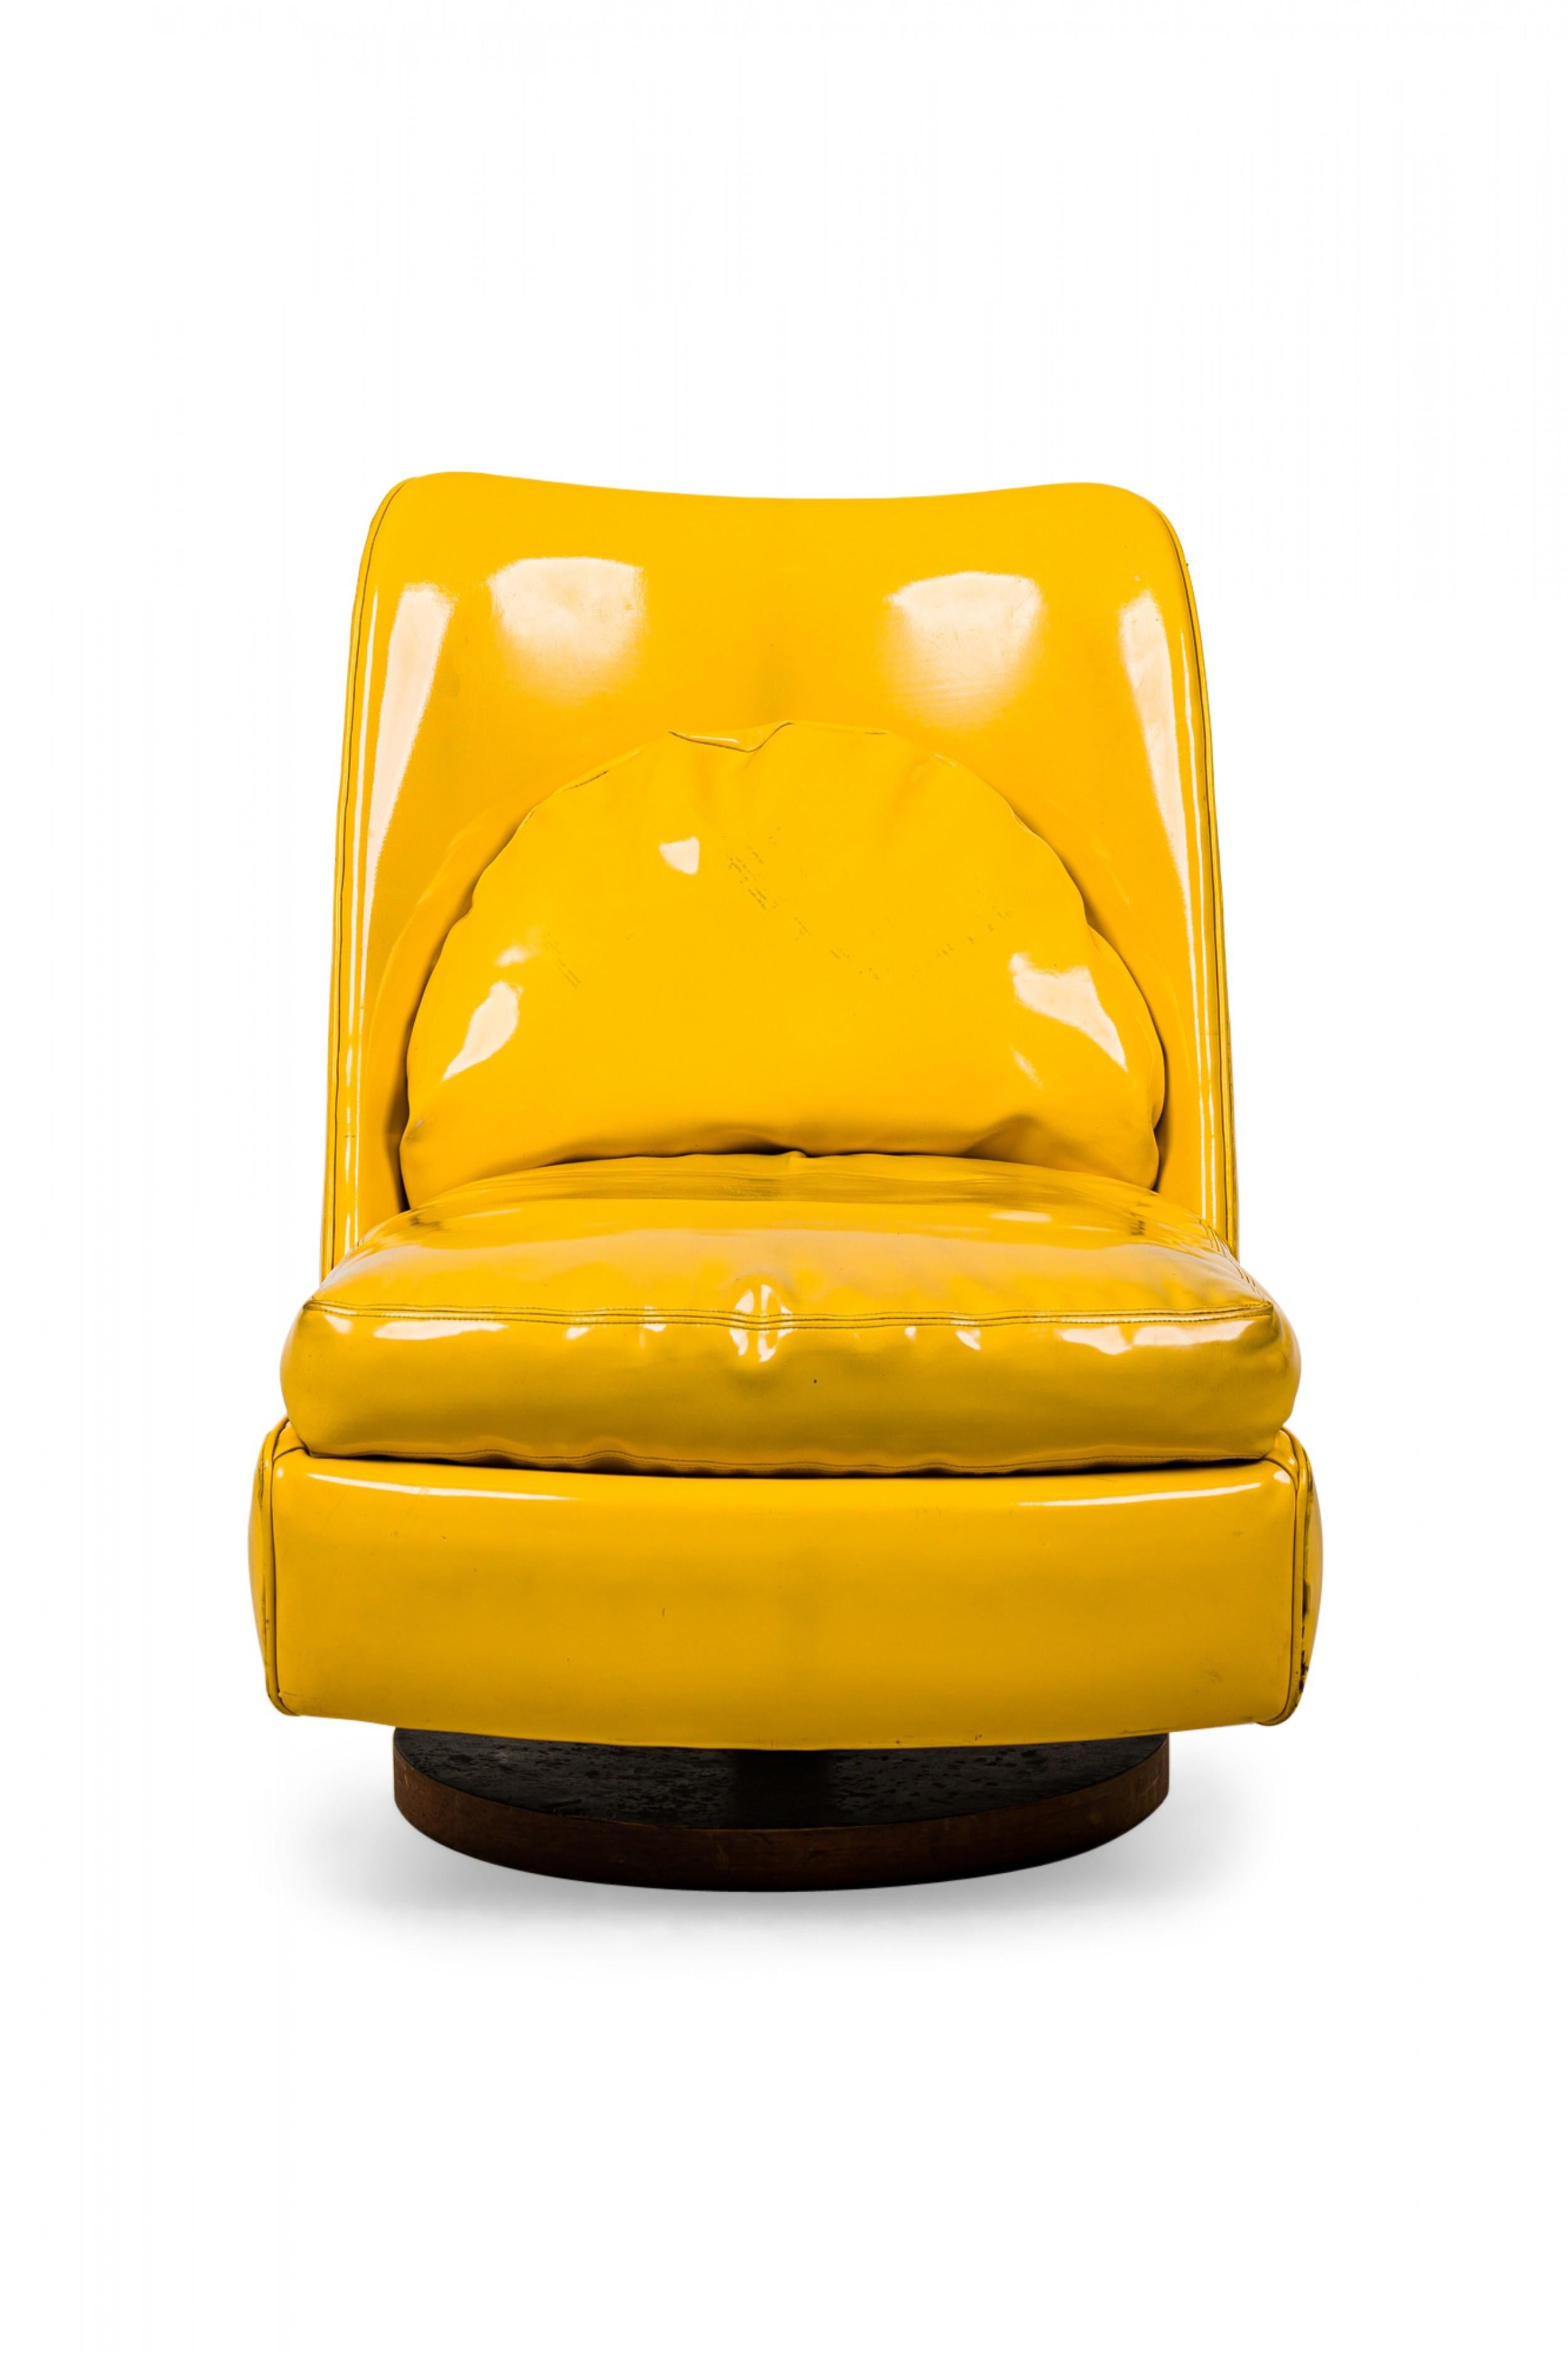 Chaise d'appoint pivotante et basculante de style américain du milieu du siècle dernier. Revêtement en cuir verni jaune vif et coussin de dossier semi-circulaire incorporé. (MILO BAUGHMAN)
